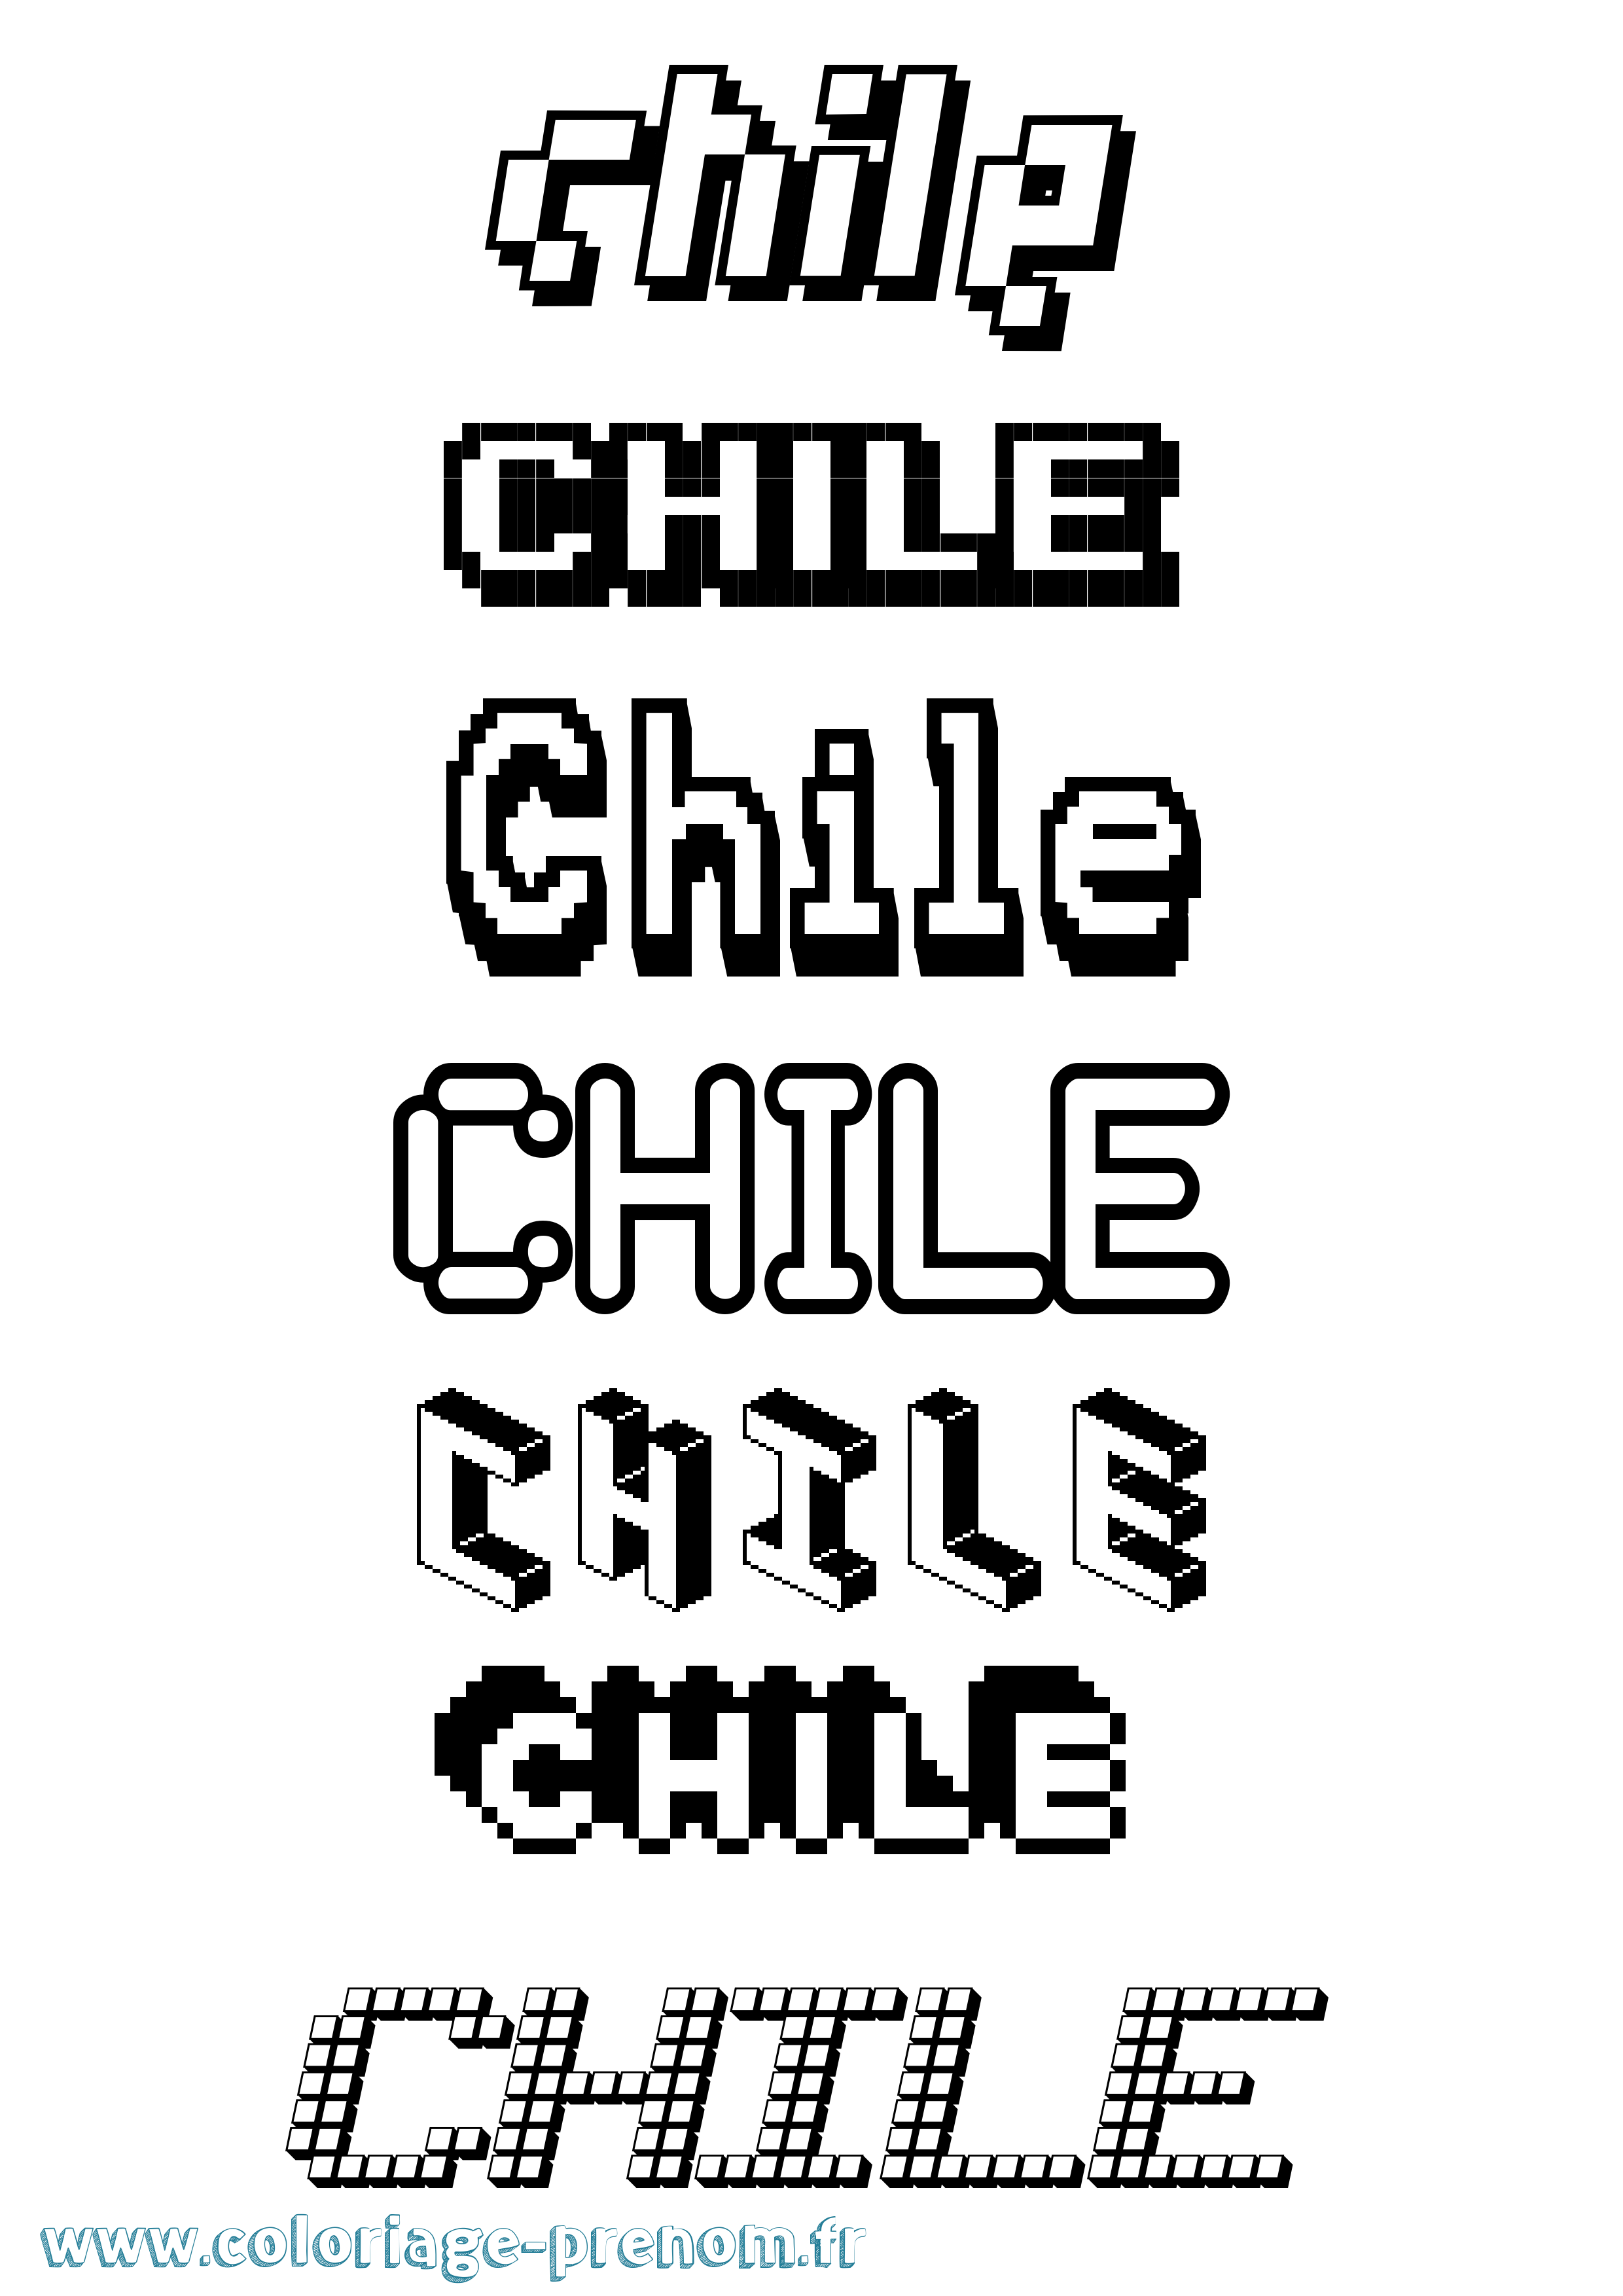 Coloriage prénom Chile Pixel